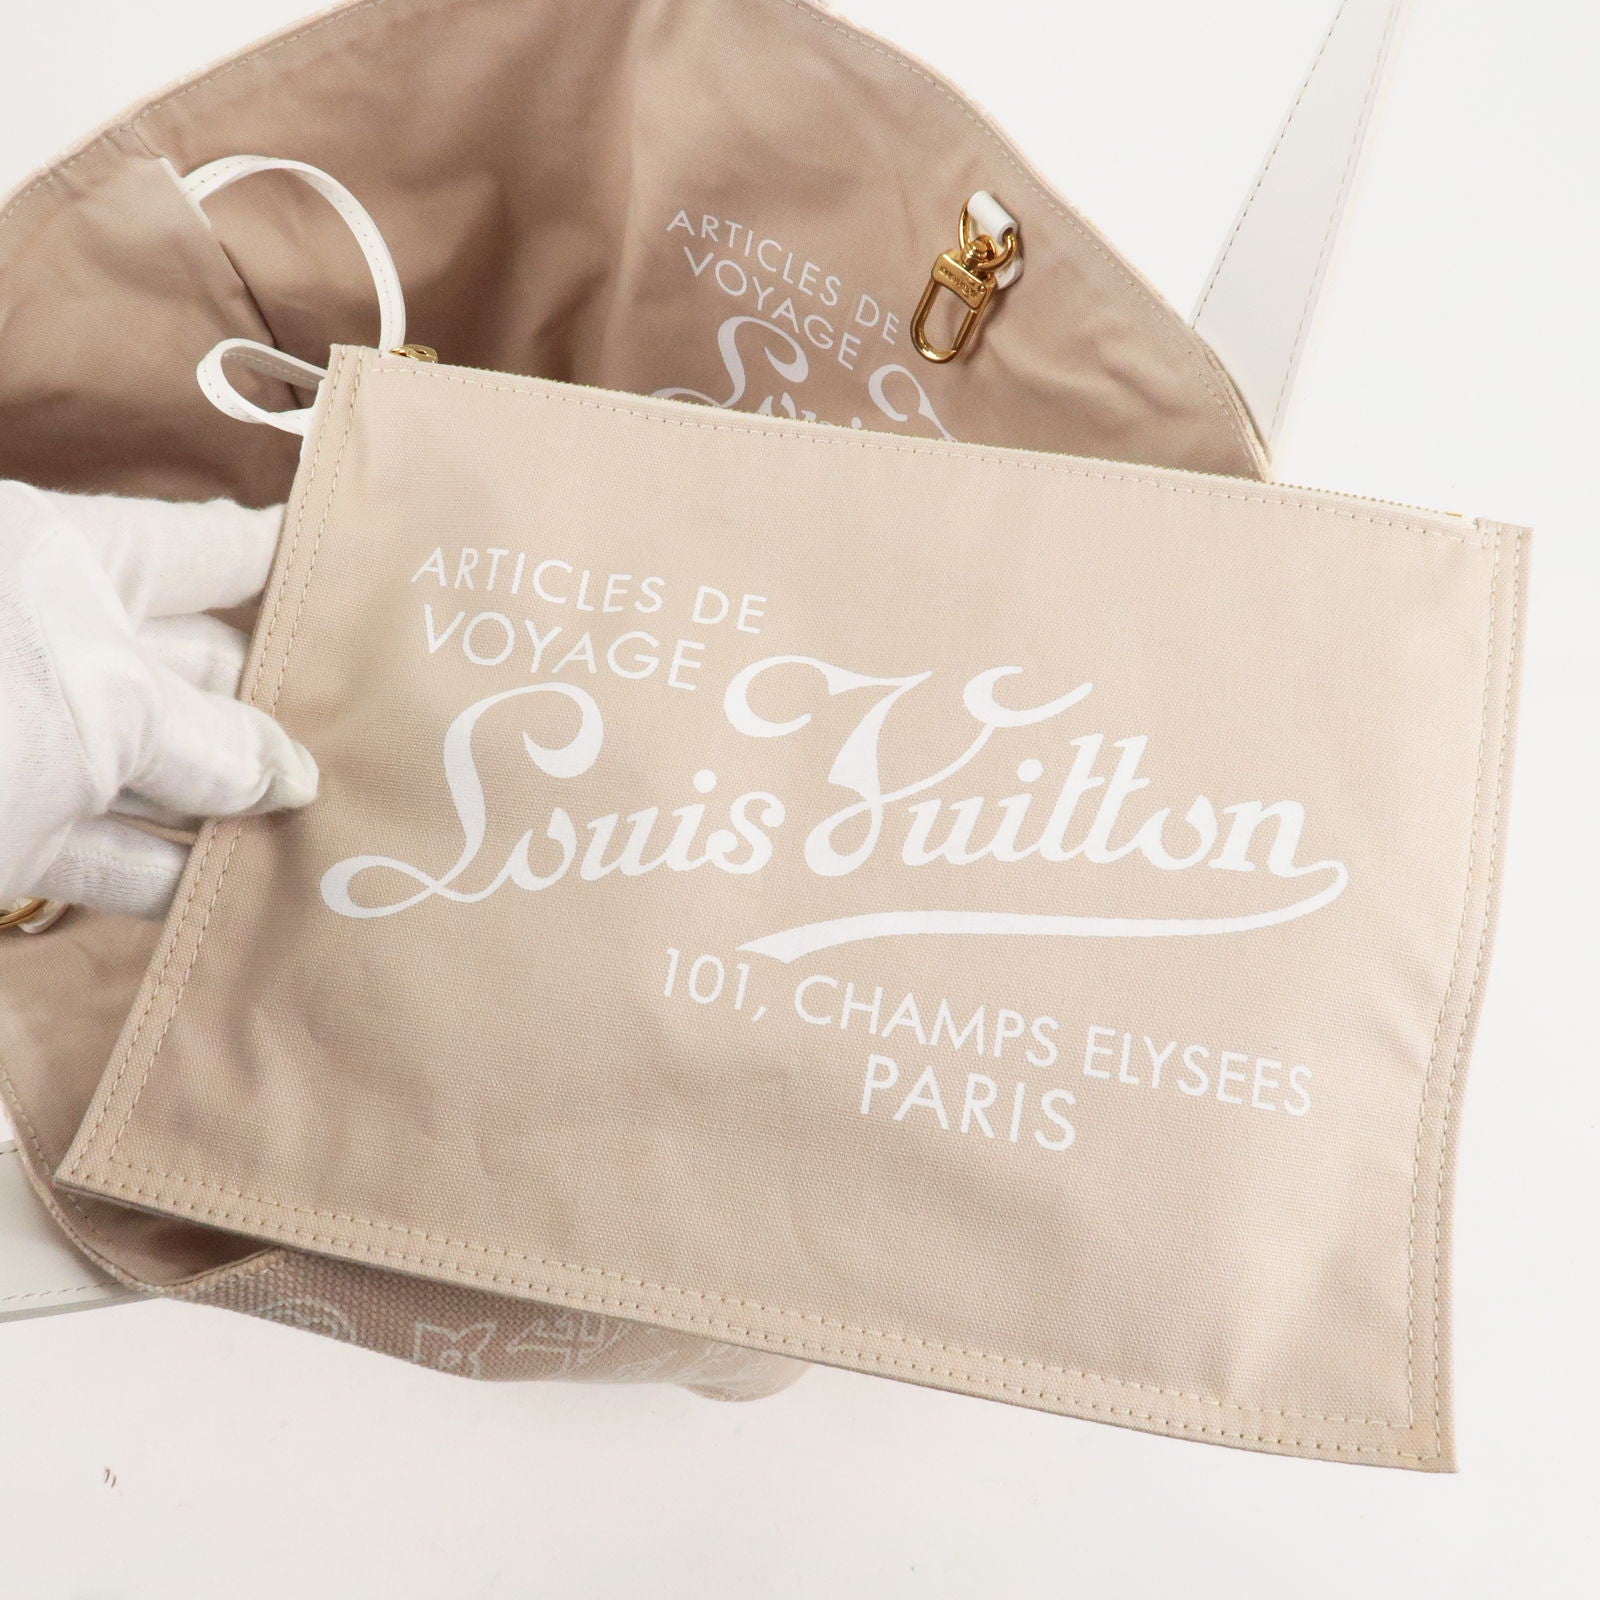 Louis Vuitton Cabas Ipanema Canvas PM - ShopStyle Shoulder Bags